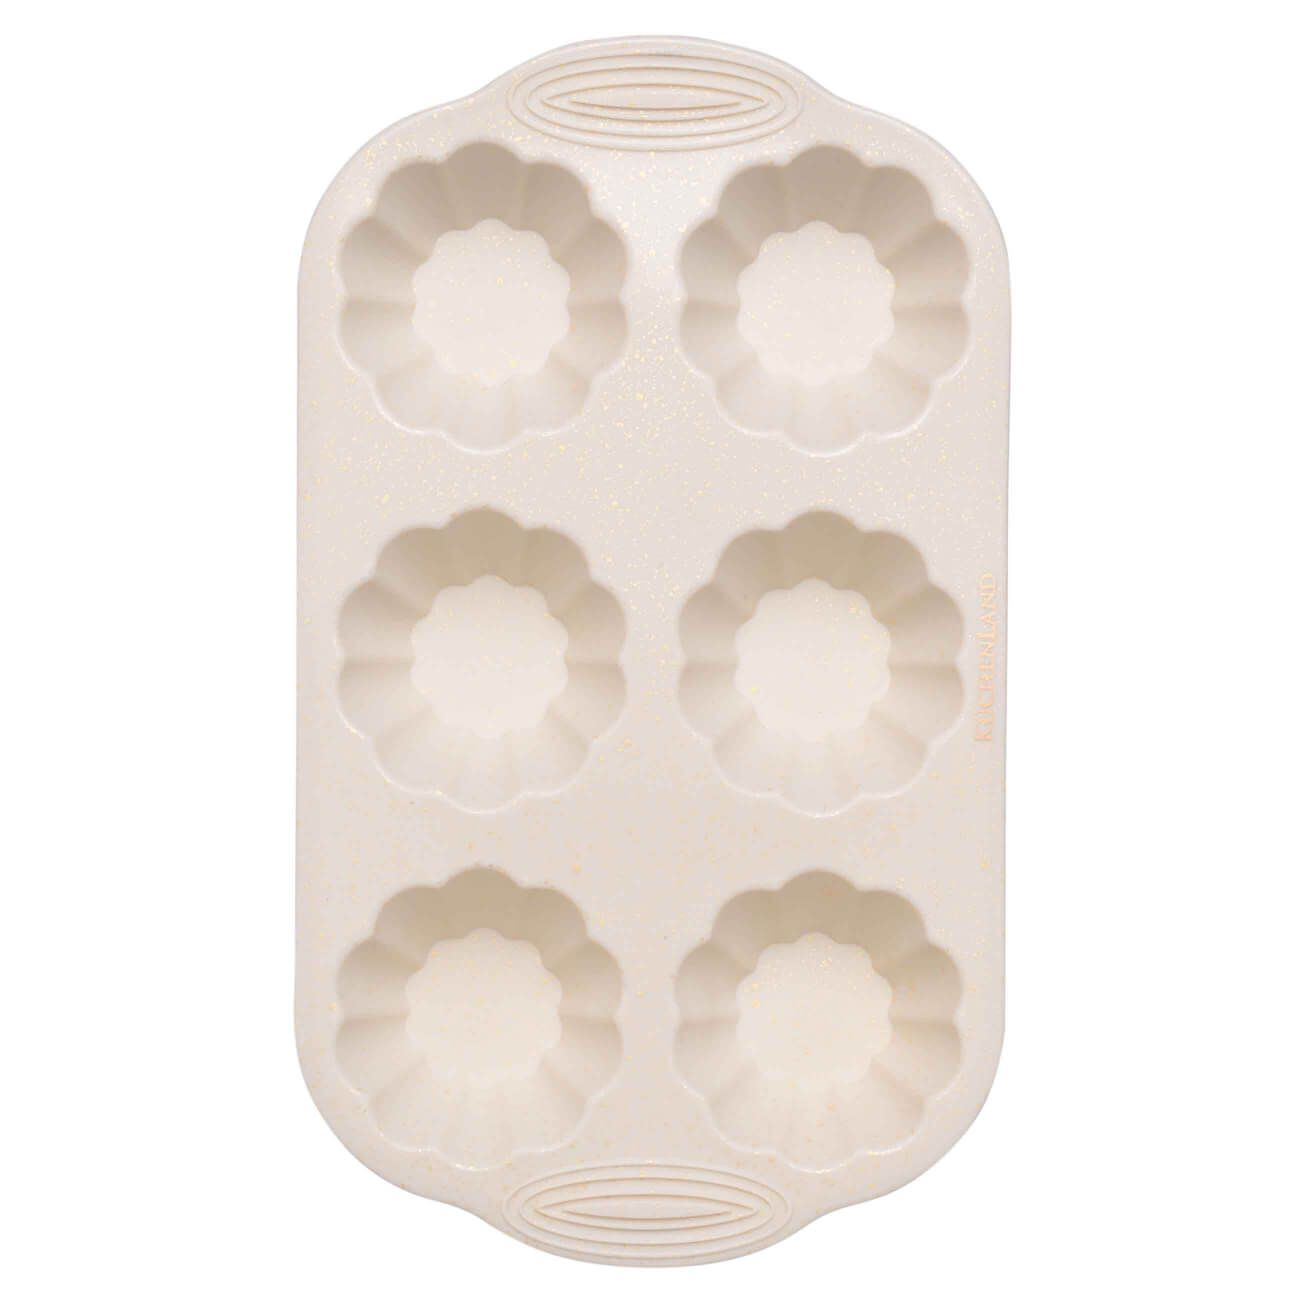 Форма для выпечки кексов, 28x19 см, 6 отд, молочная, в крапинку, силикон, Bakery speckled изображение № 1